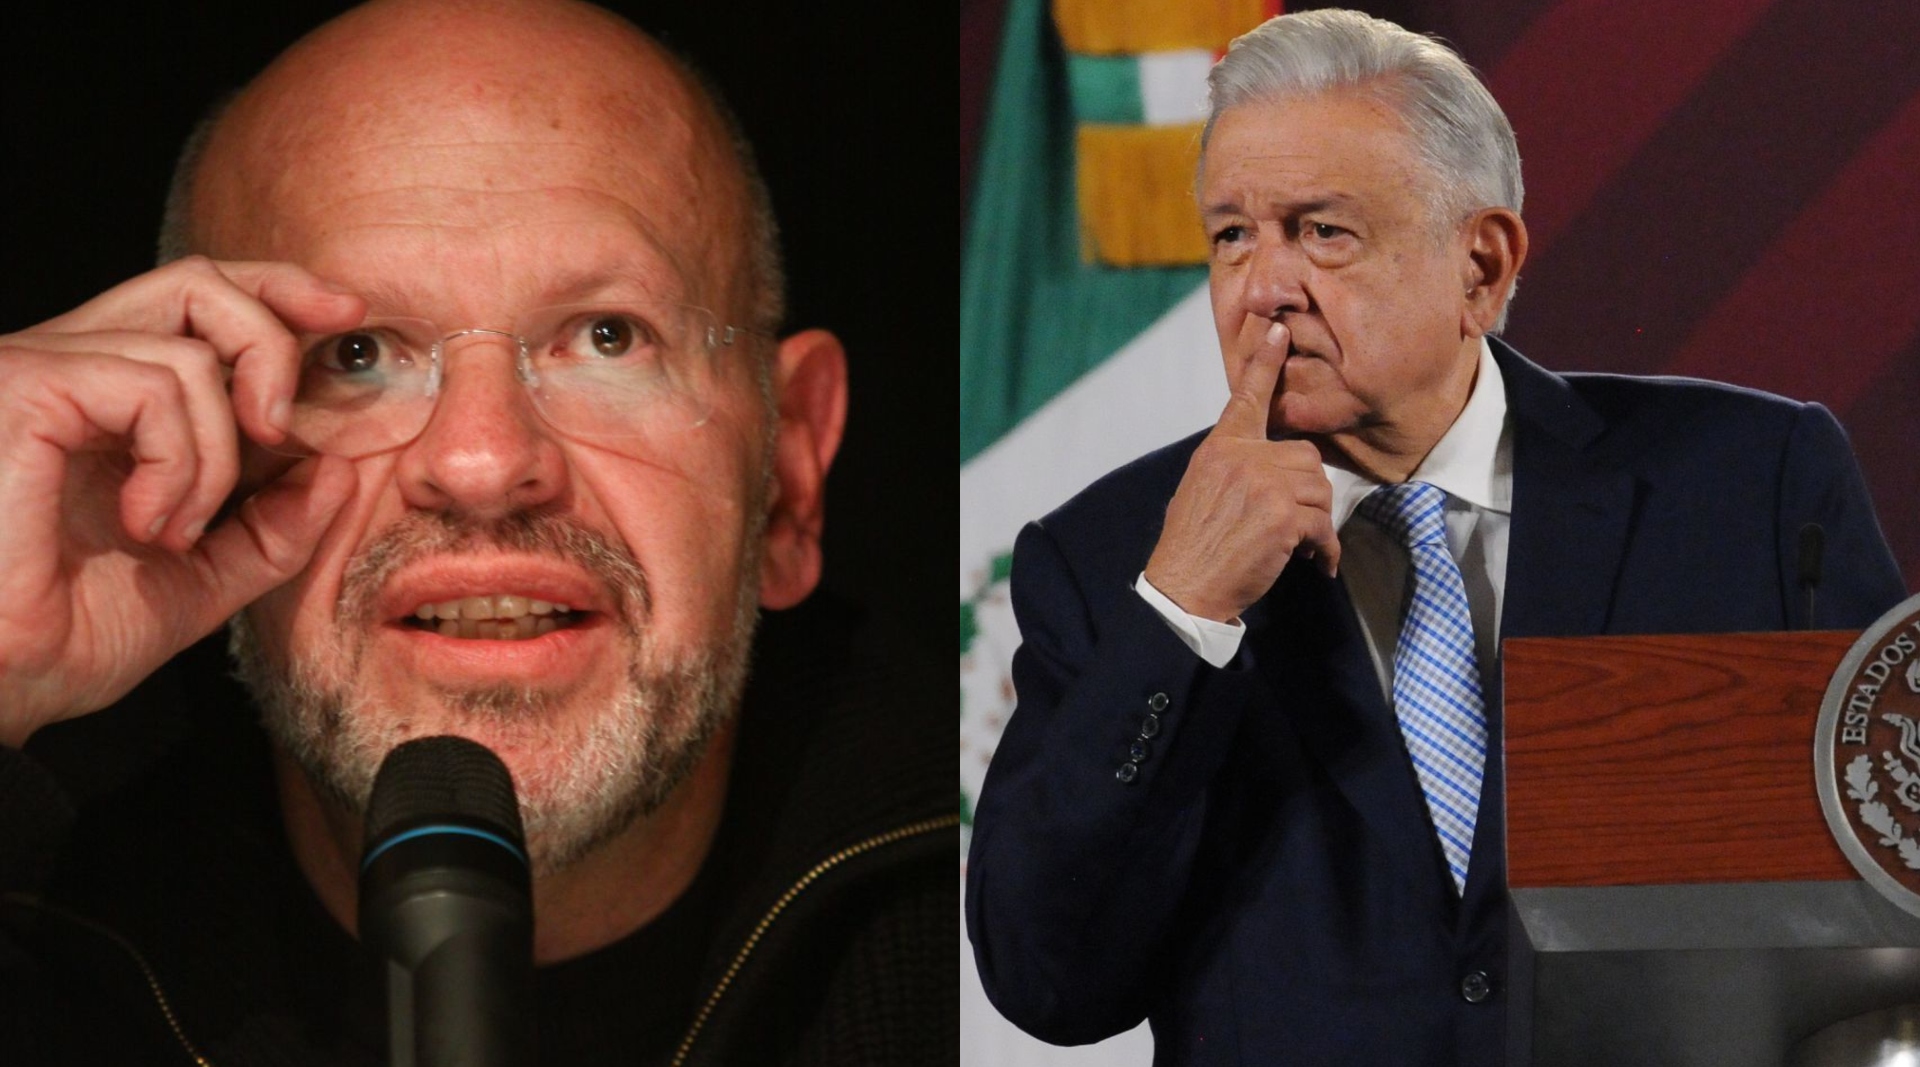 El columnista señaló a López Obrador de haber imaginado escenarios "disparatados" ante las fallas de su gobierno. (Cuartoscuro)